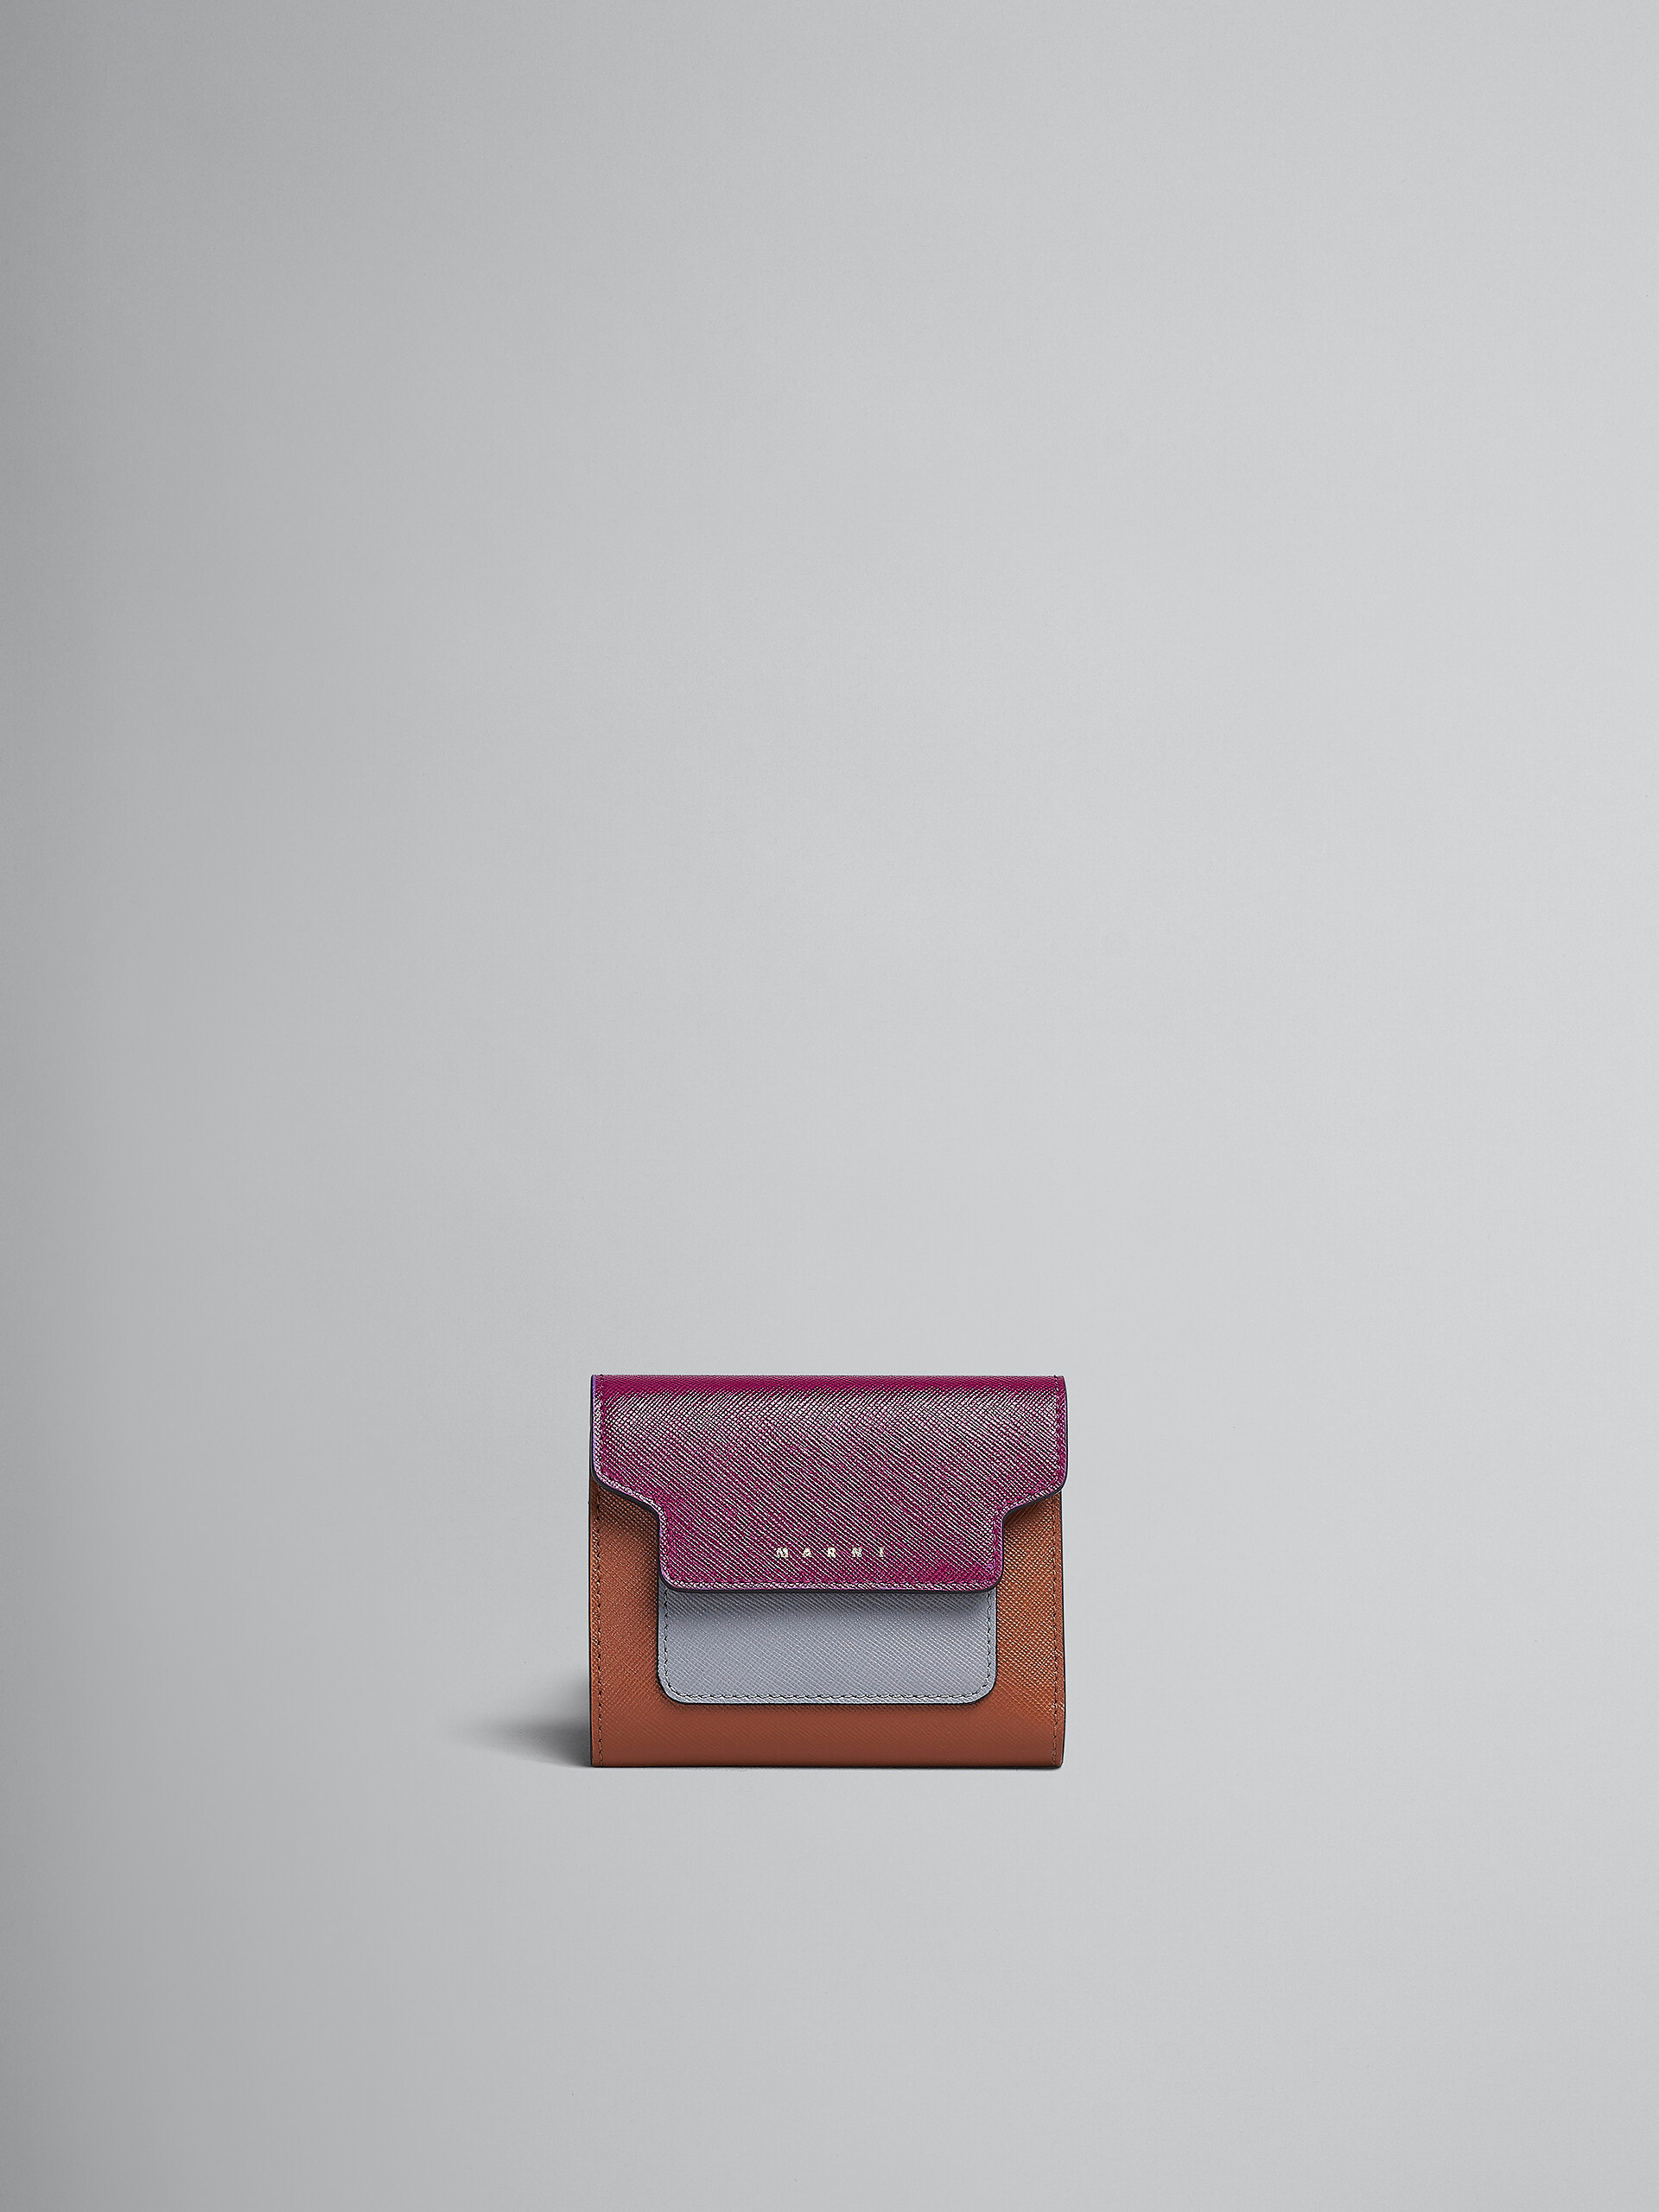 Portafoglio tri-fold in saffiano viola grigio e marrone - Portafogli - Image 1